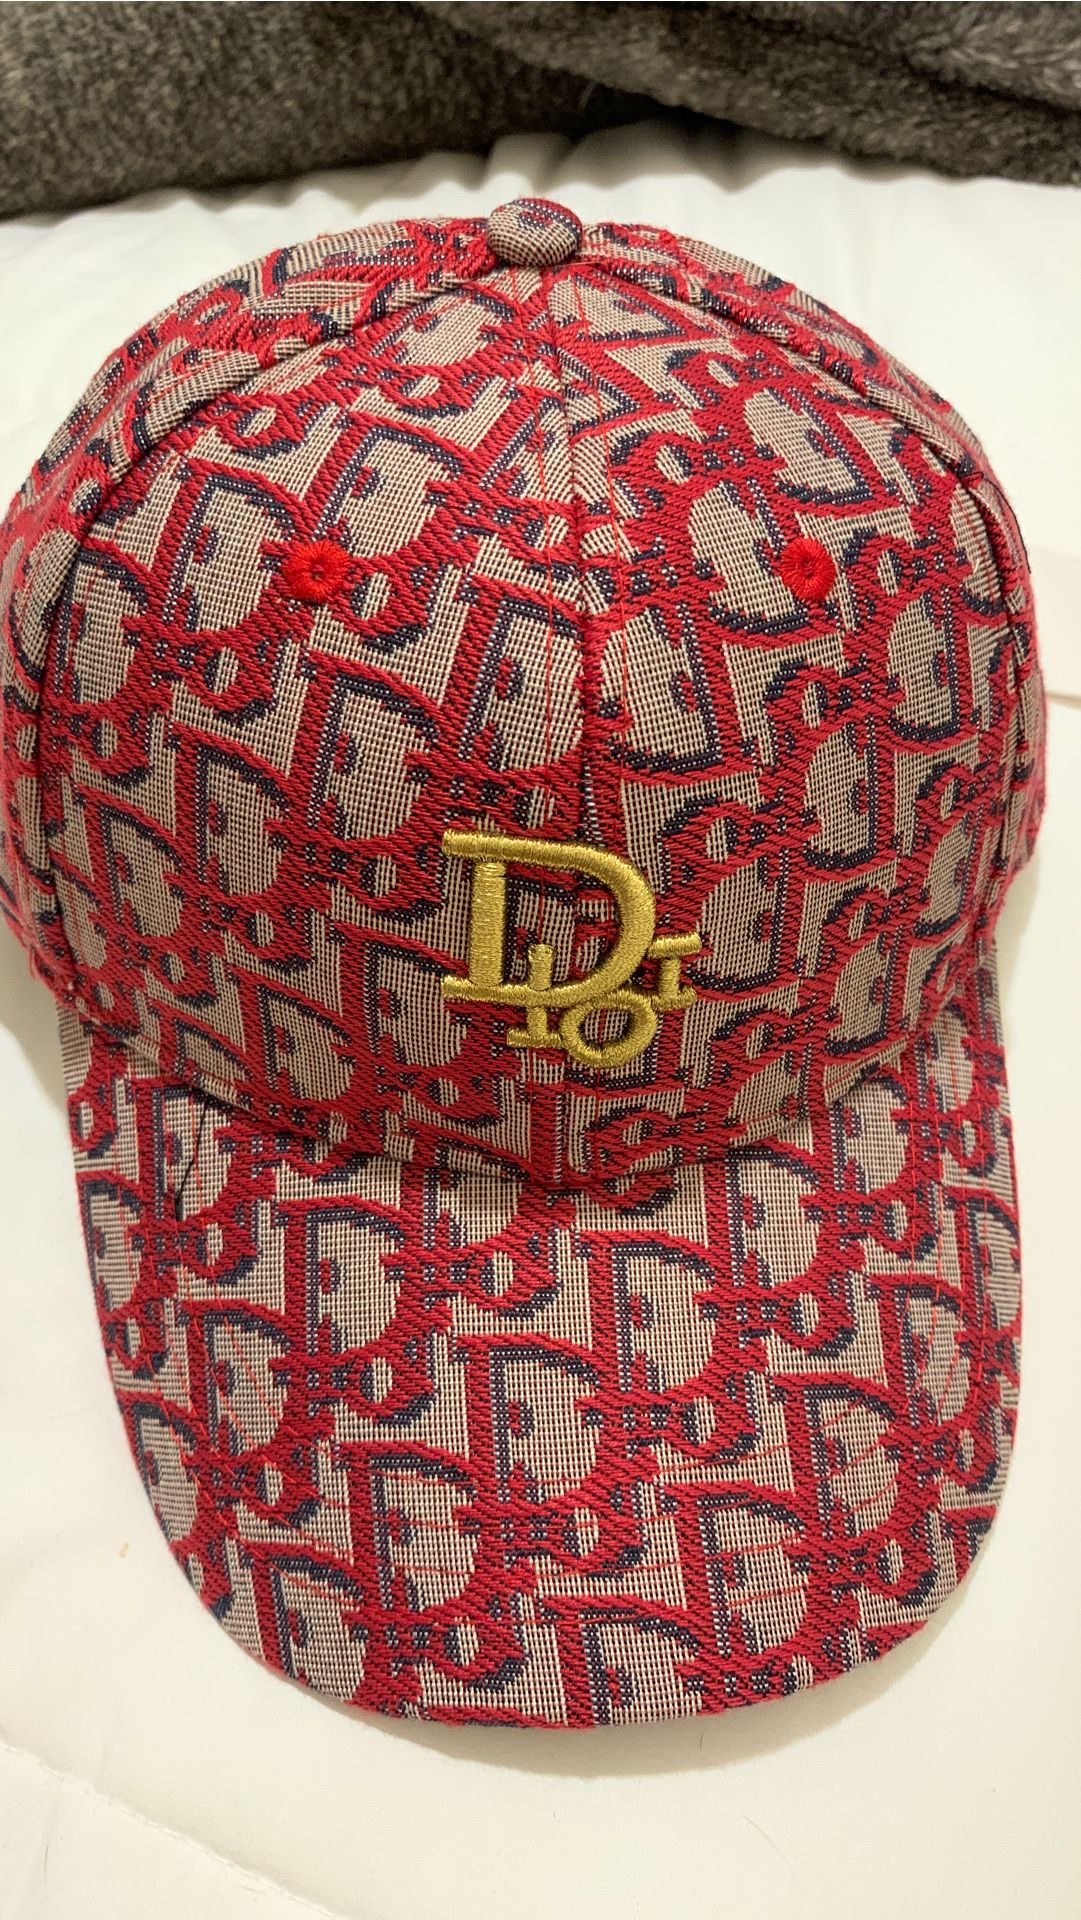 Dior hat